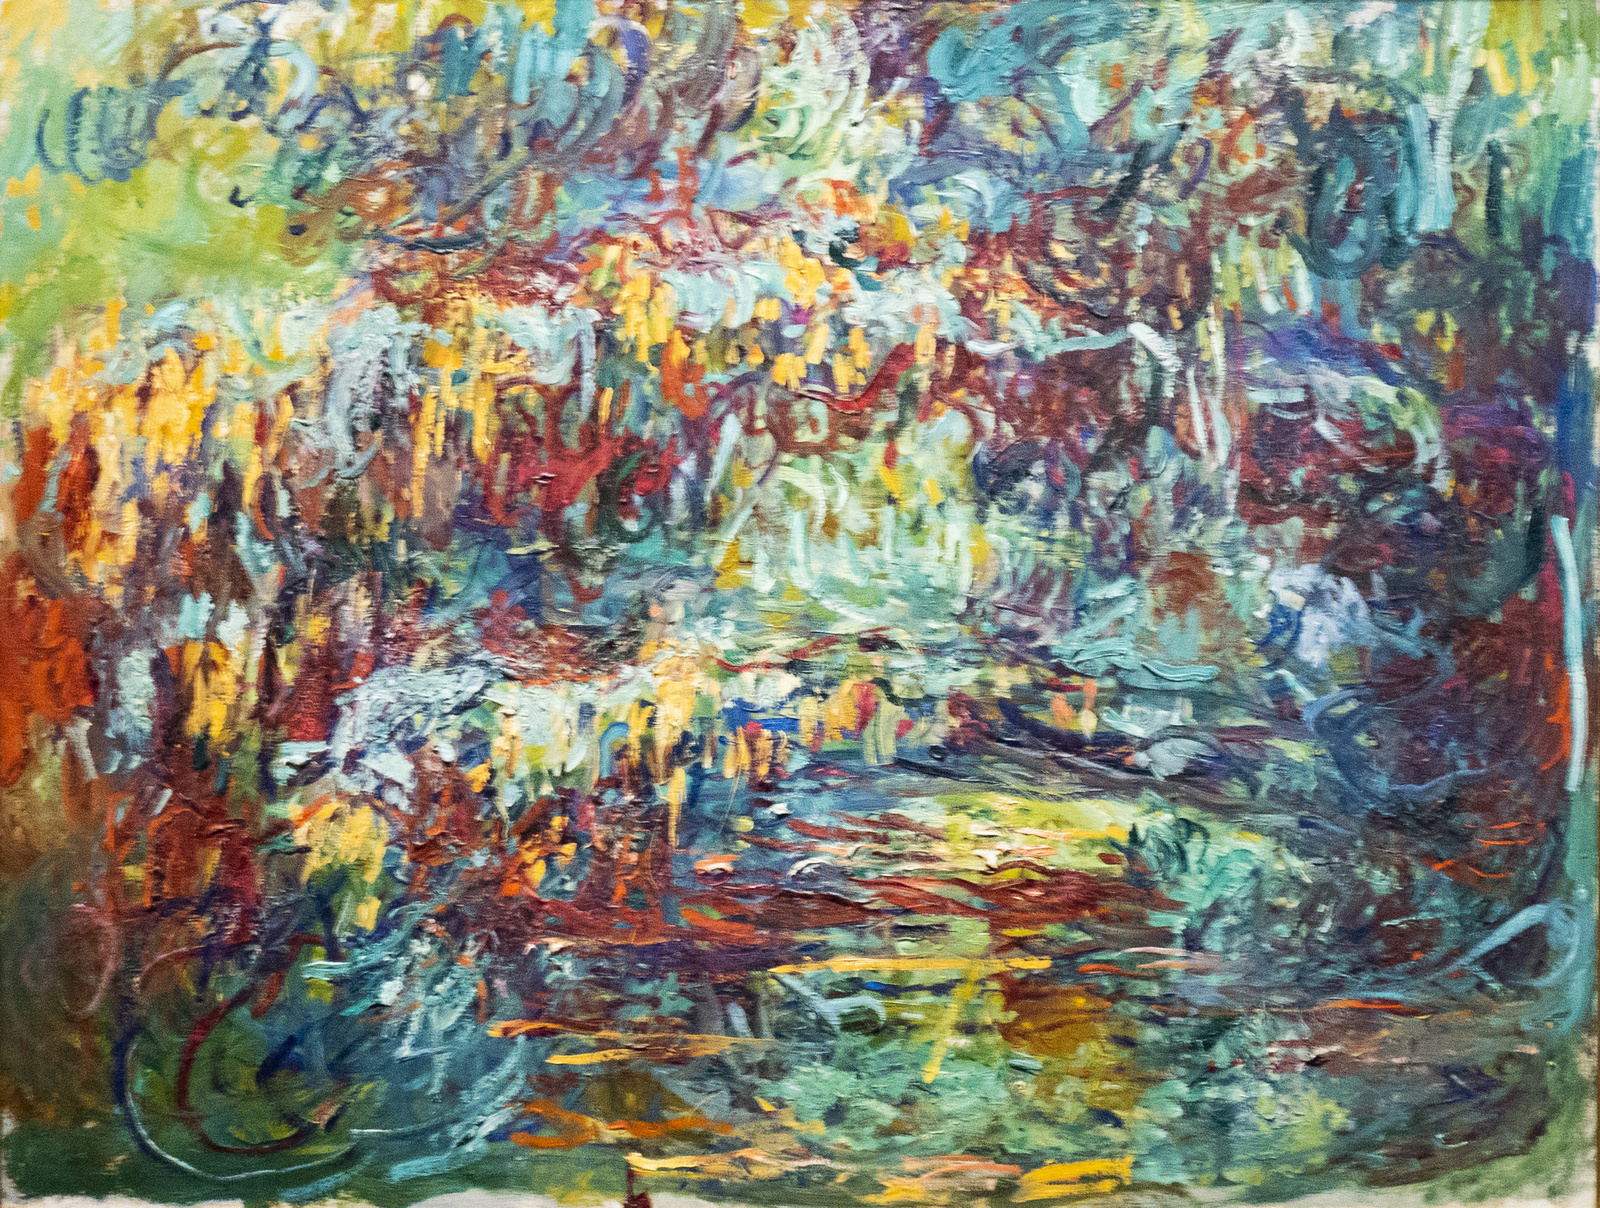 Bécs Claude Monet - The Japanese Bridge (1918 - 1924)